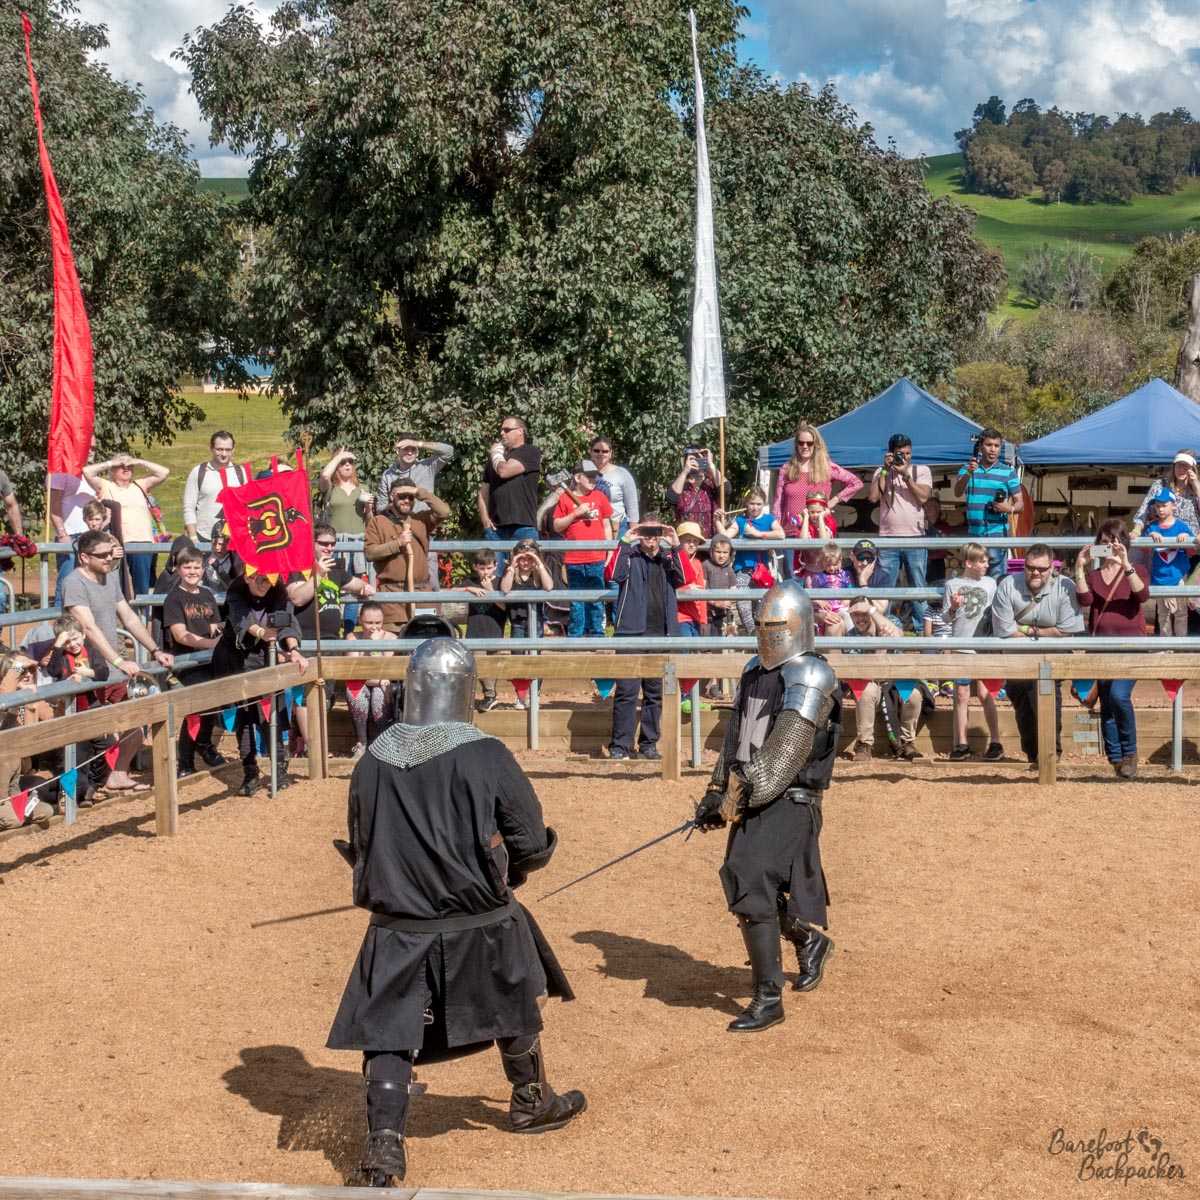 Battle scene at the Mediaeval Carnivale, Balingup